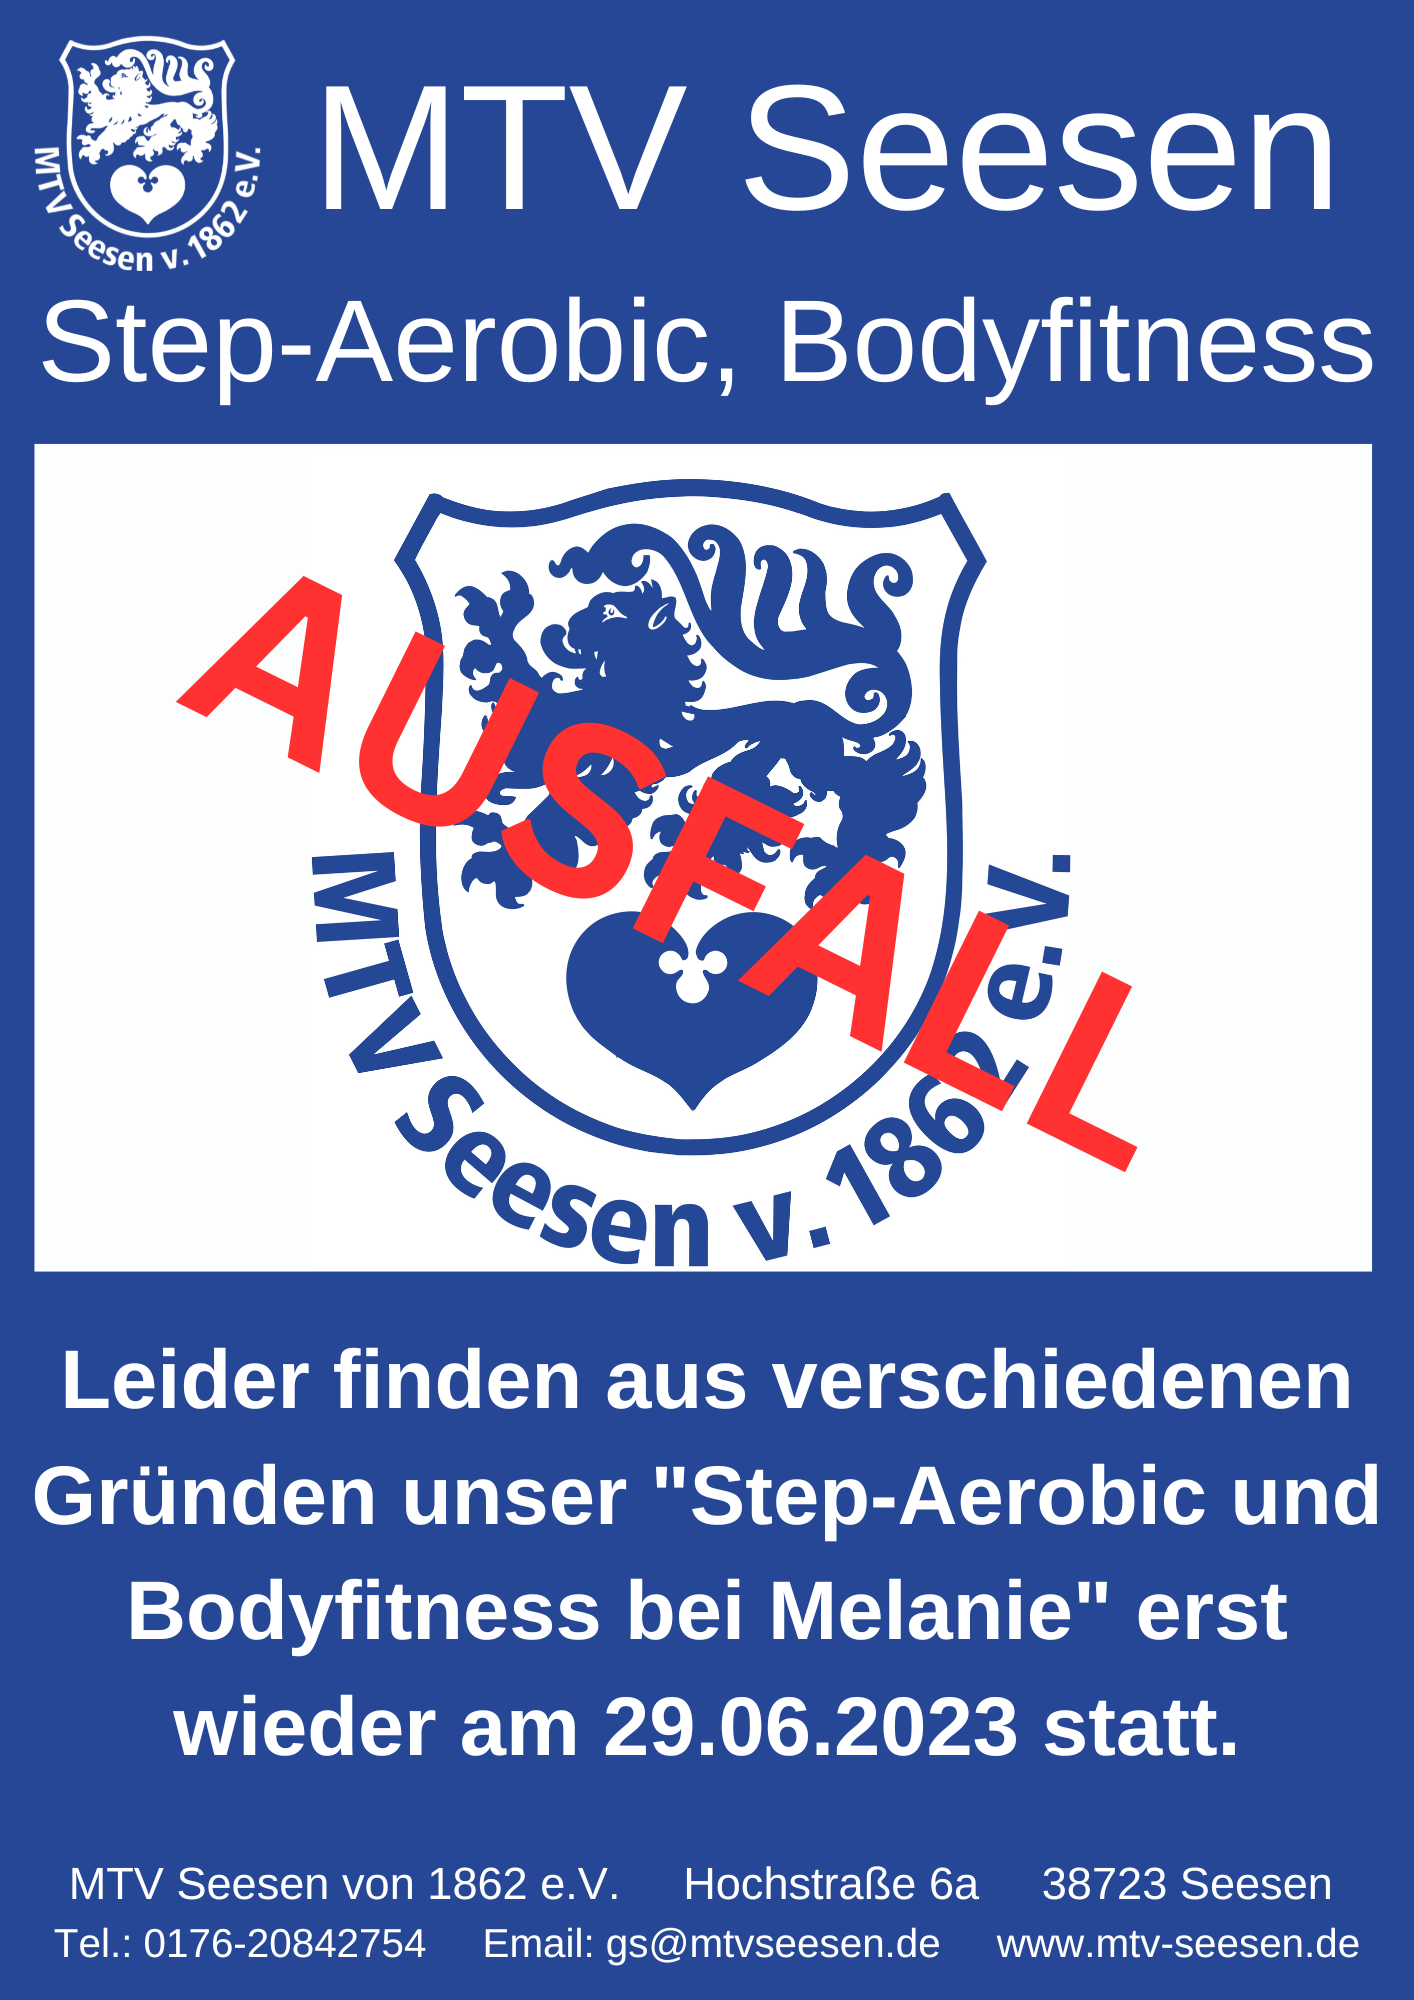 Step-Aerobic und Bodyfitness bei Melanie